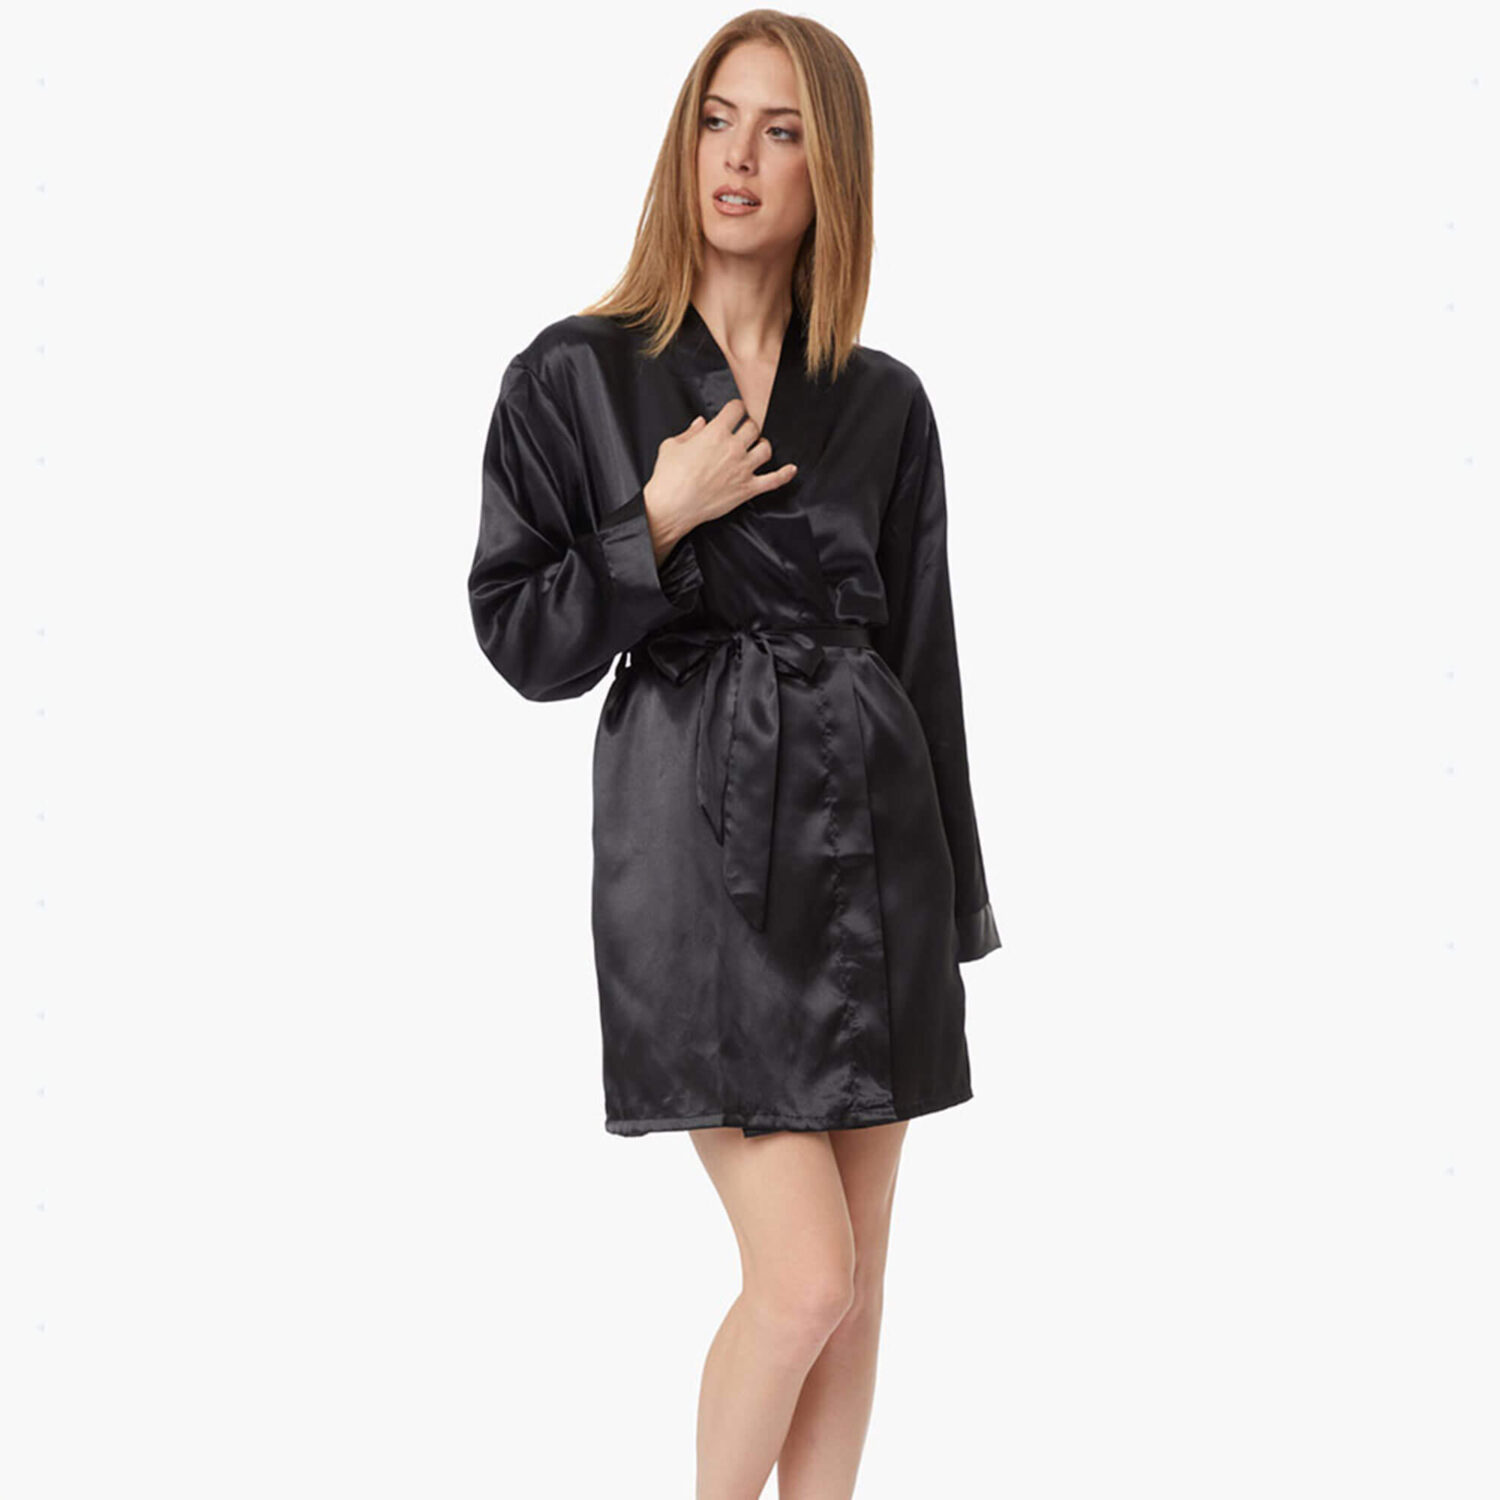 Дамски черен сатенен халат за вкъщи с коланче | Minerva